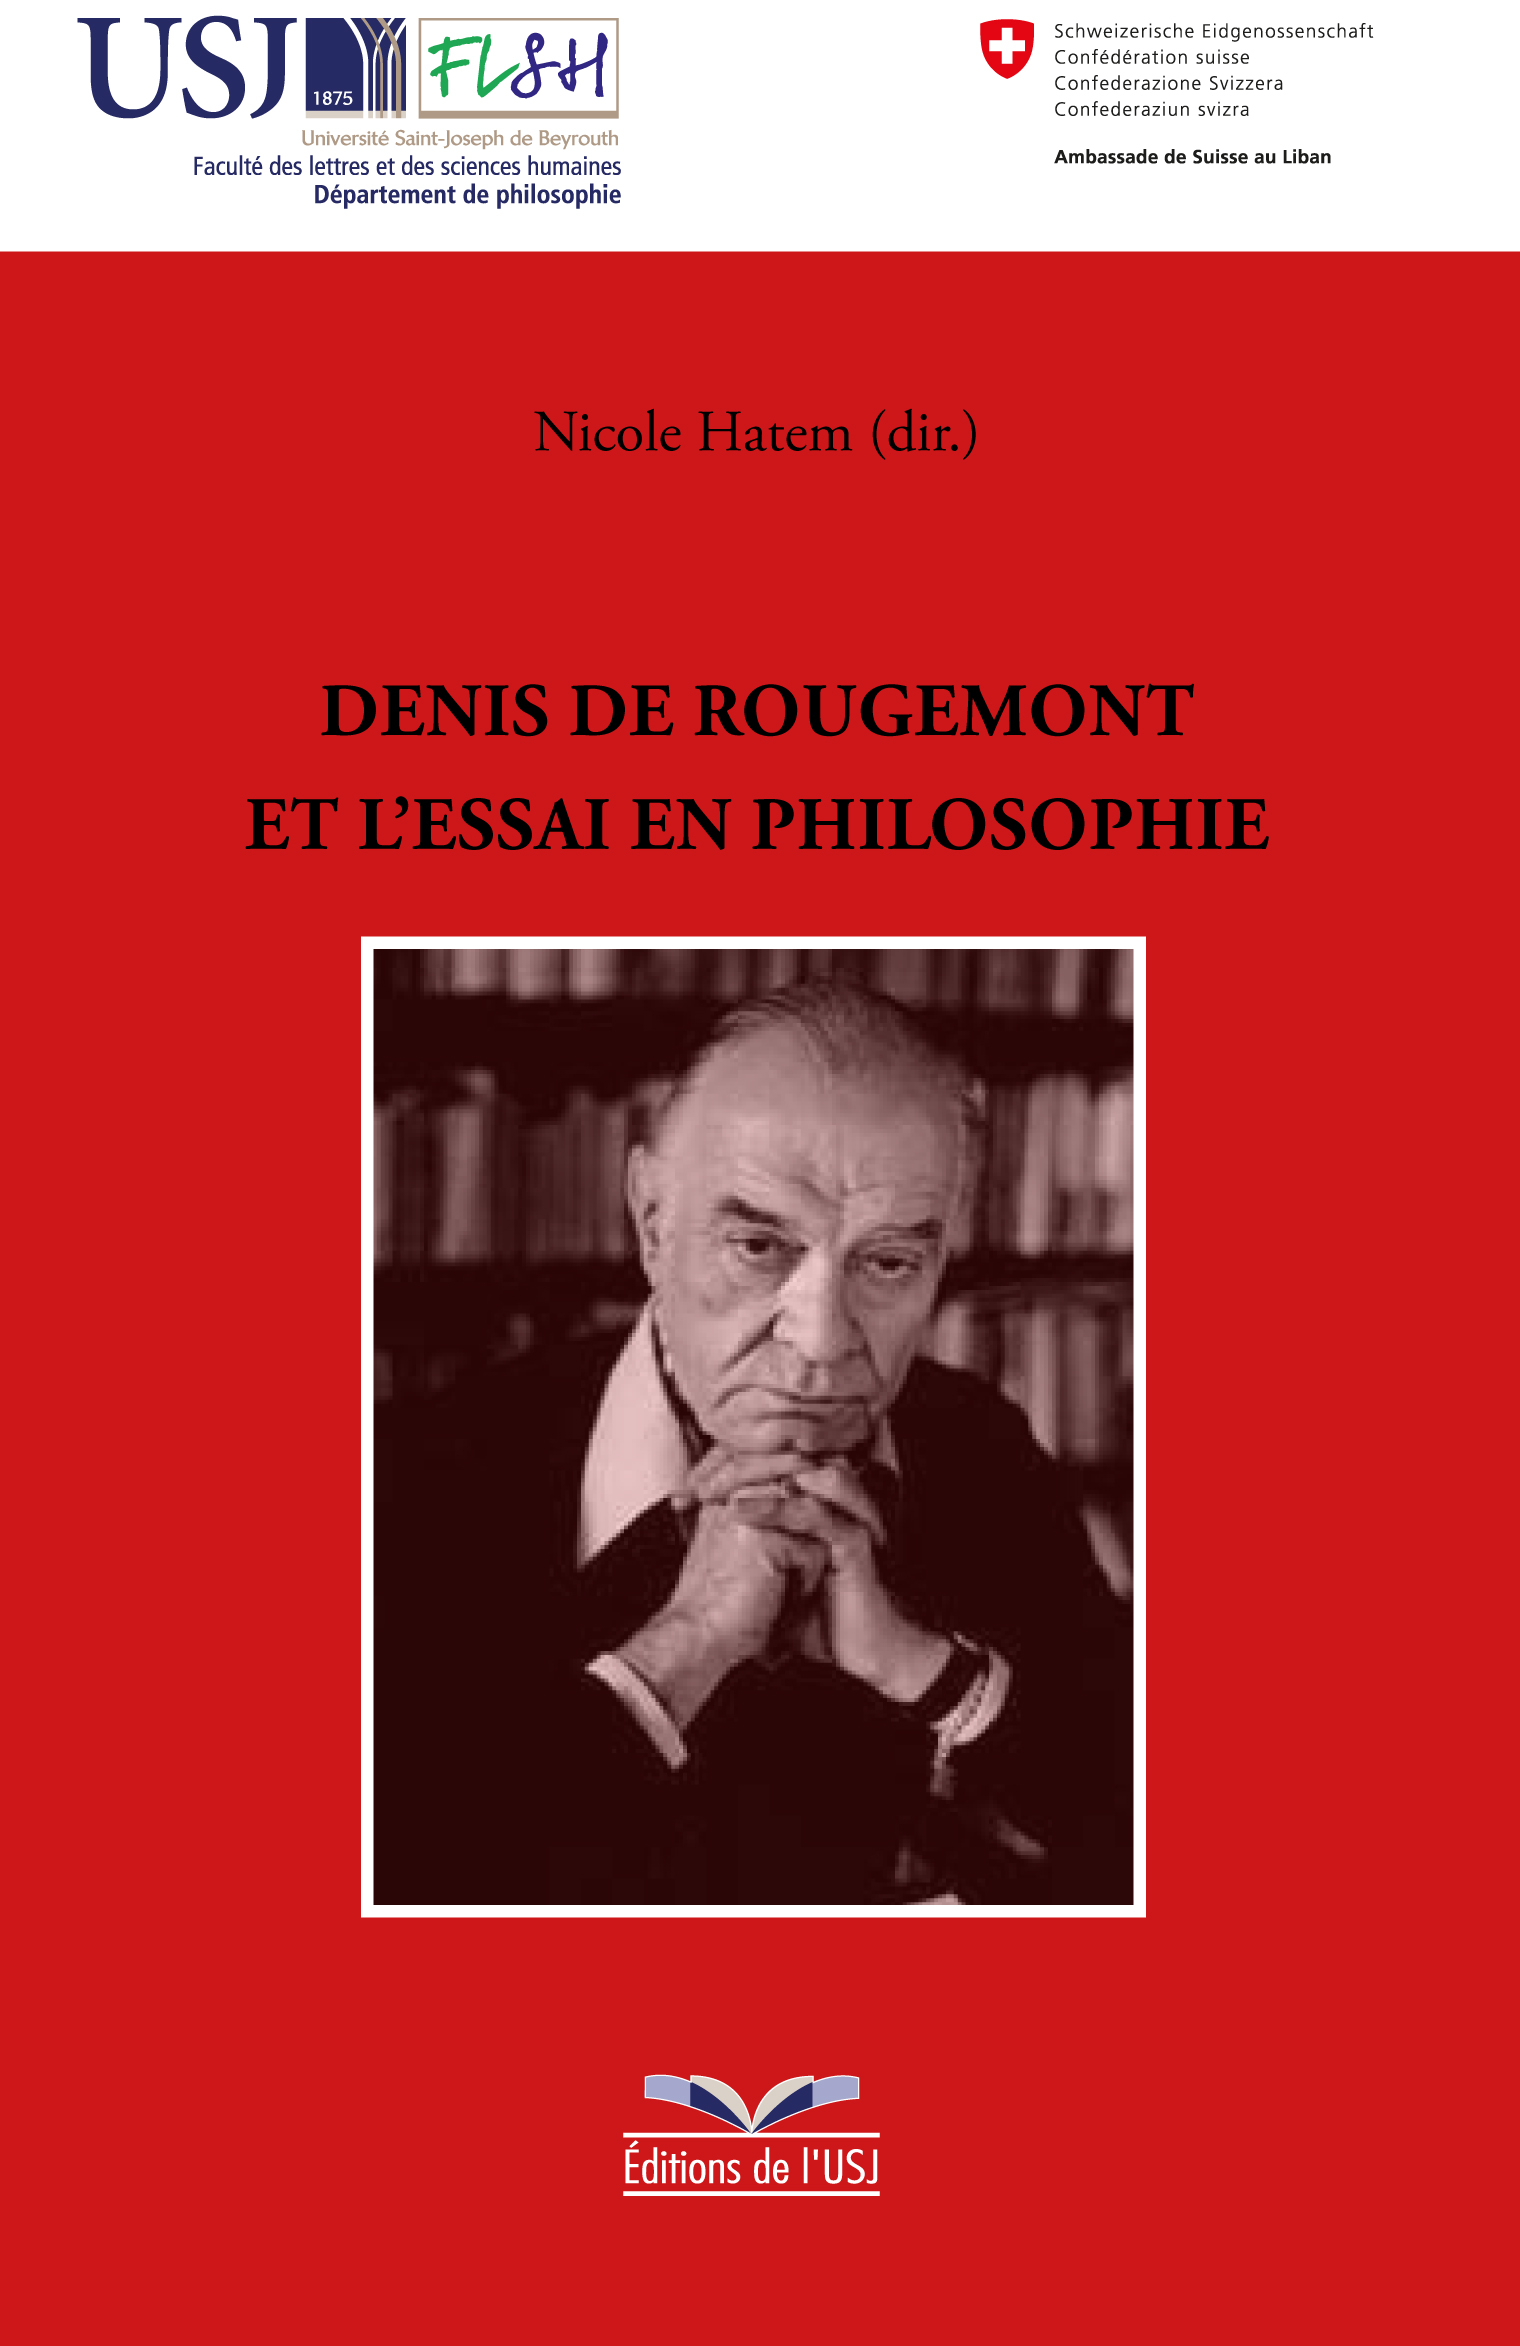 N. Hatem (dir.), Denis de Rougemont et l'essai en philosophie